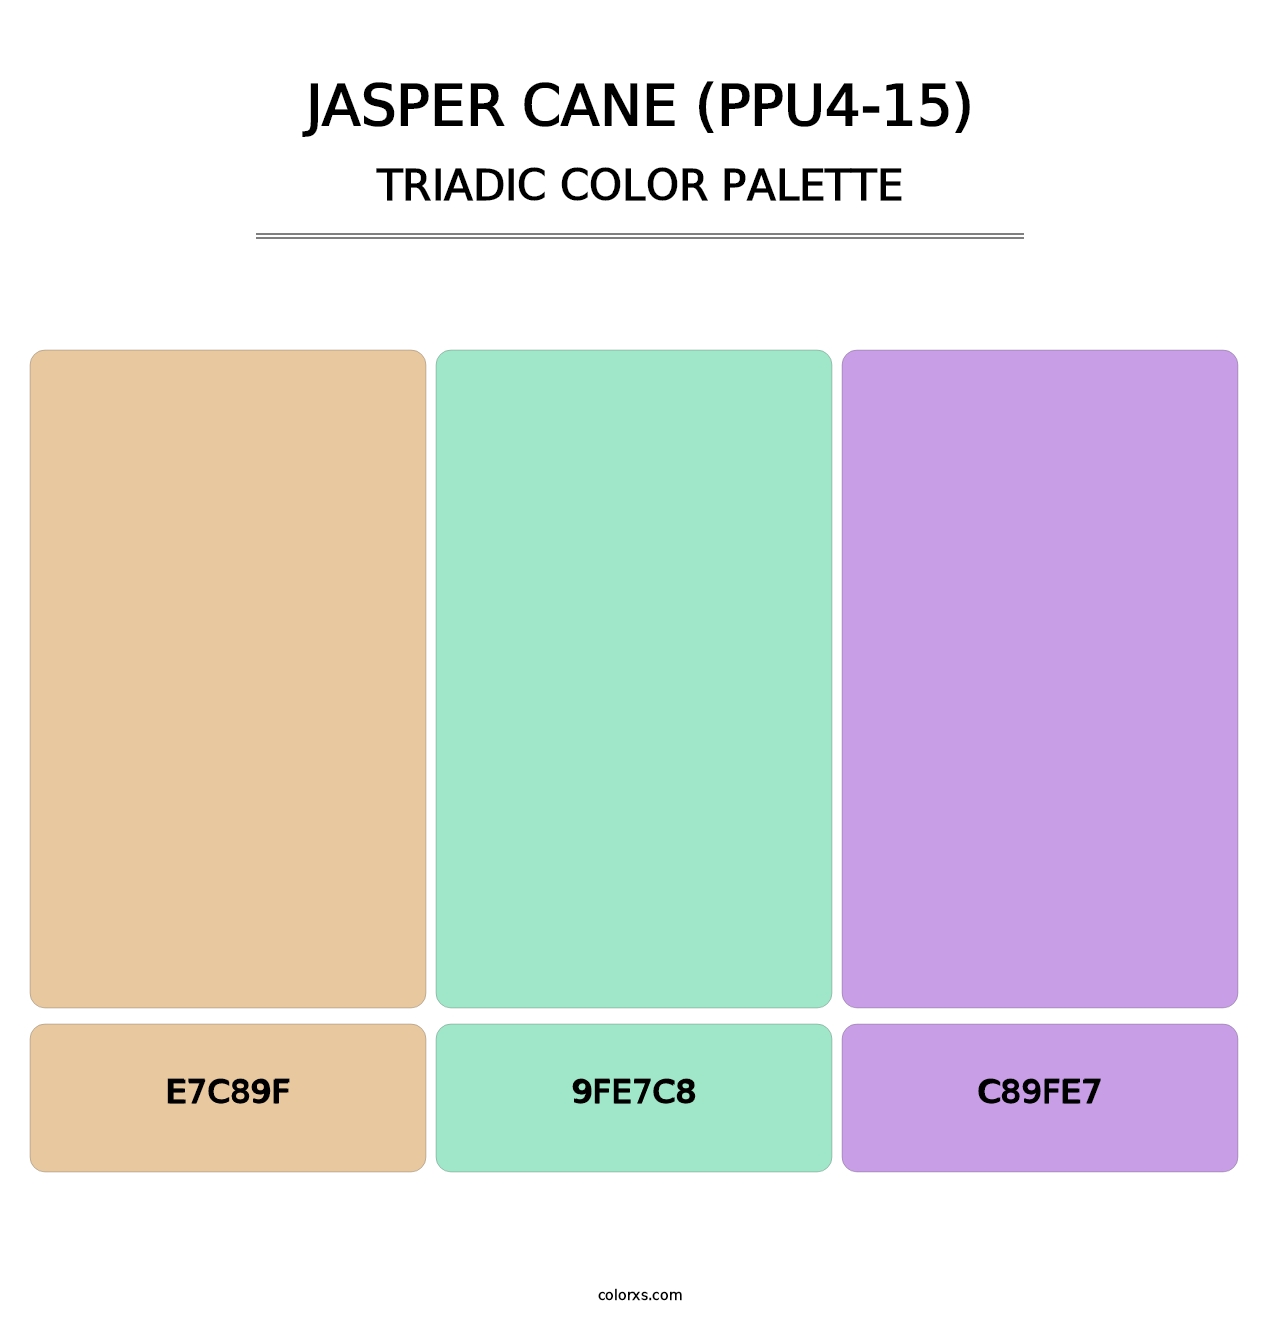 Jasper Cane (PPU4-15) - Triadic Color Palette